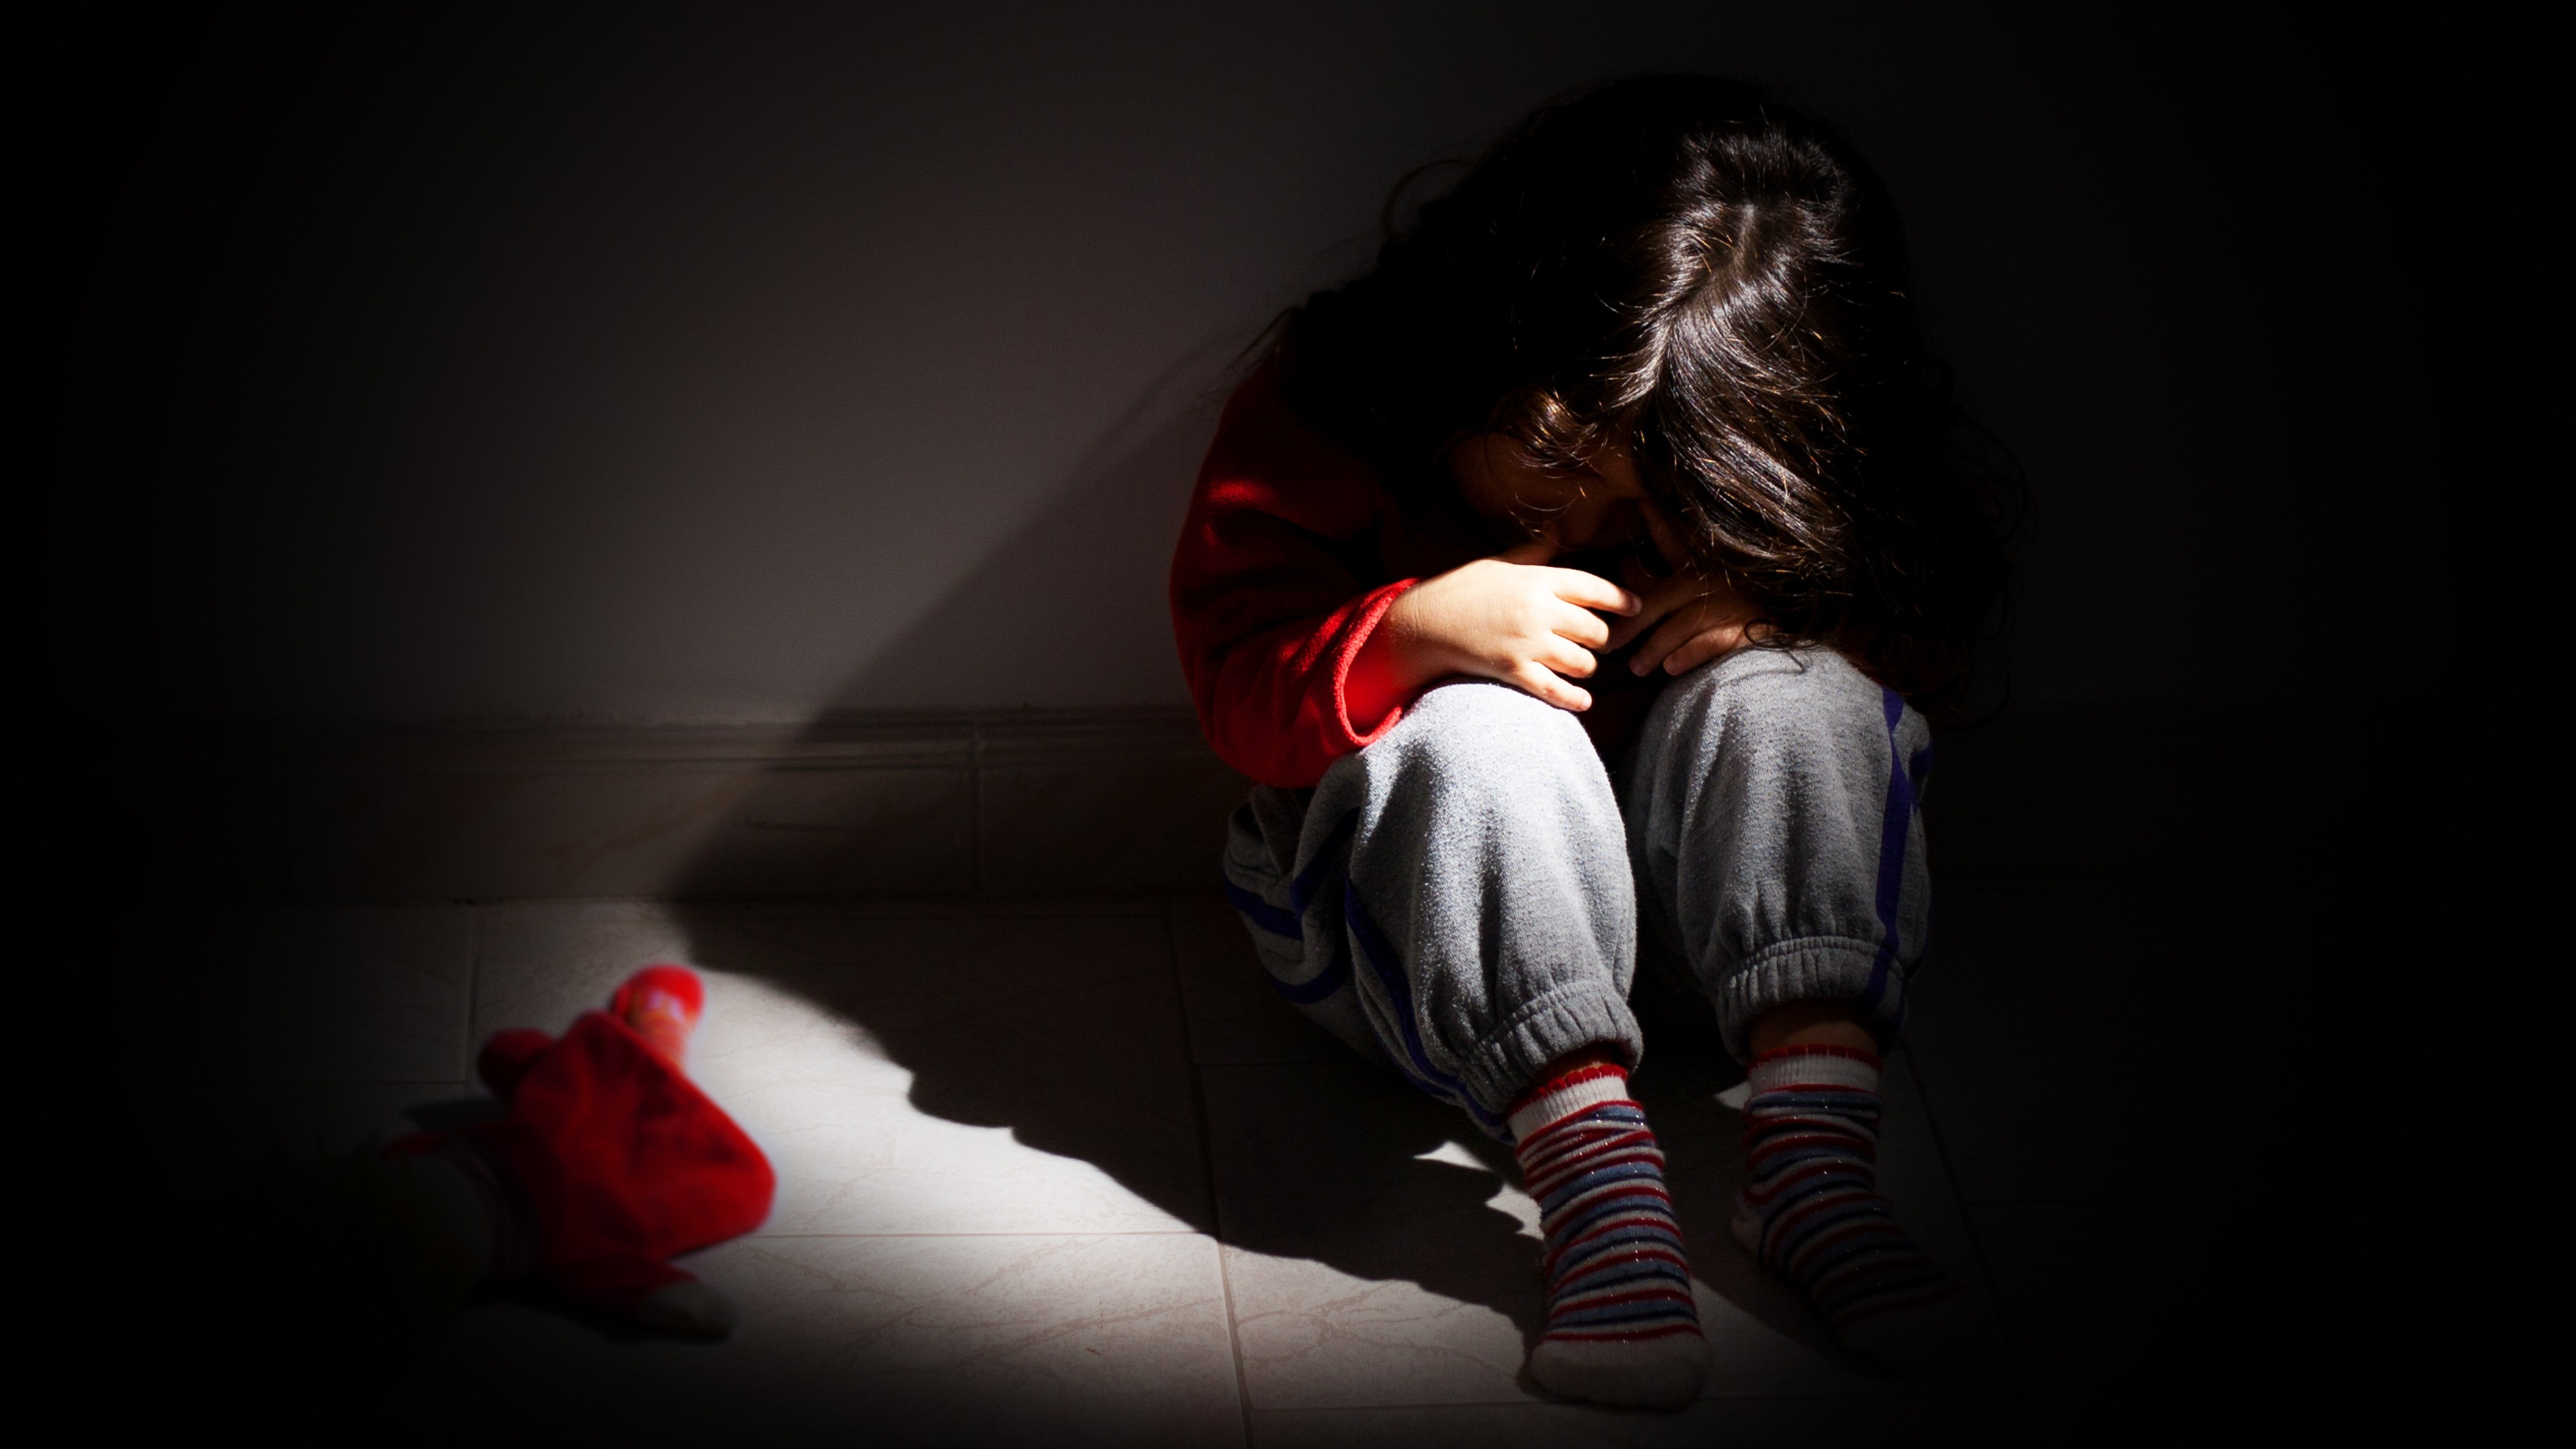 Abuso sexual en niños: Los padres de las víctimas también necesitan recibir ayuda psicológica